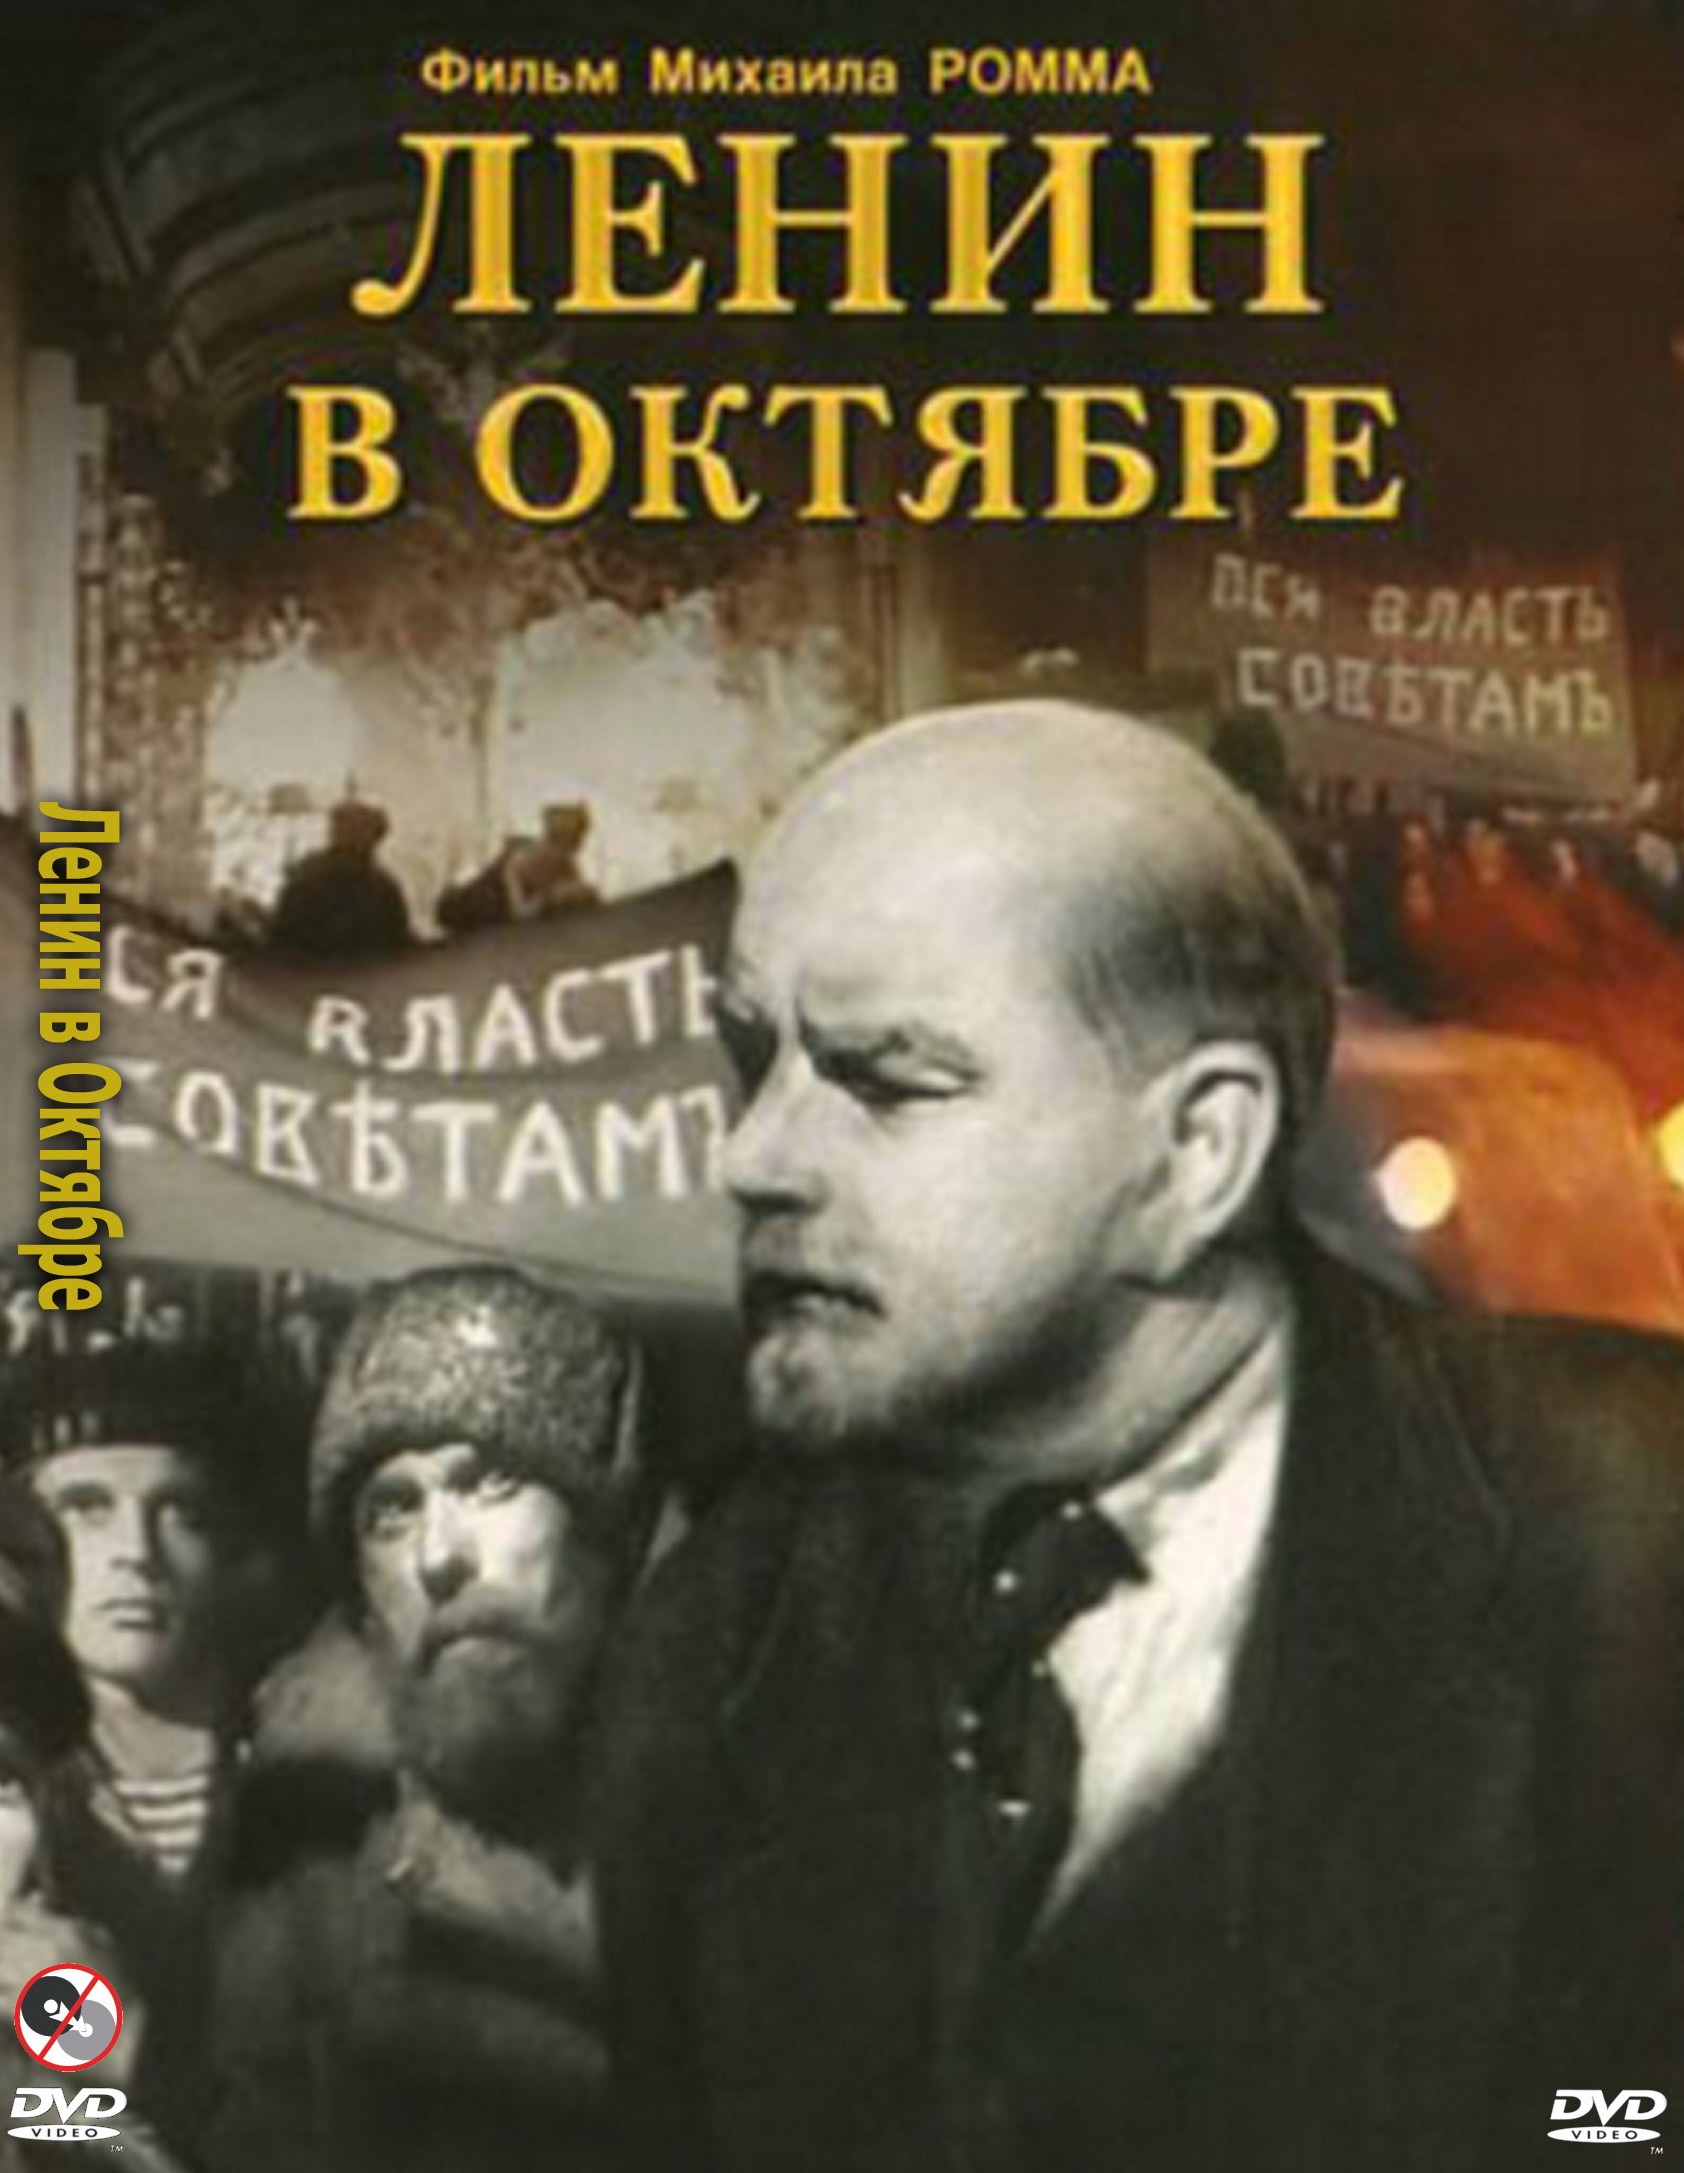 Ленин в Октябре